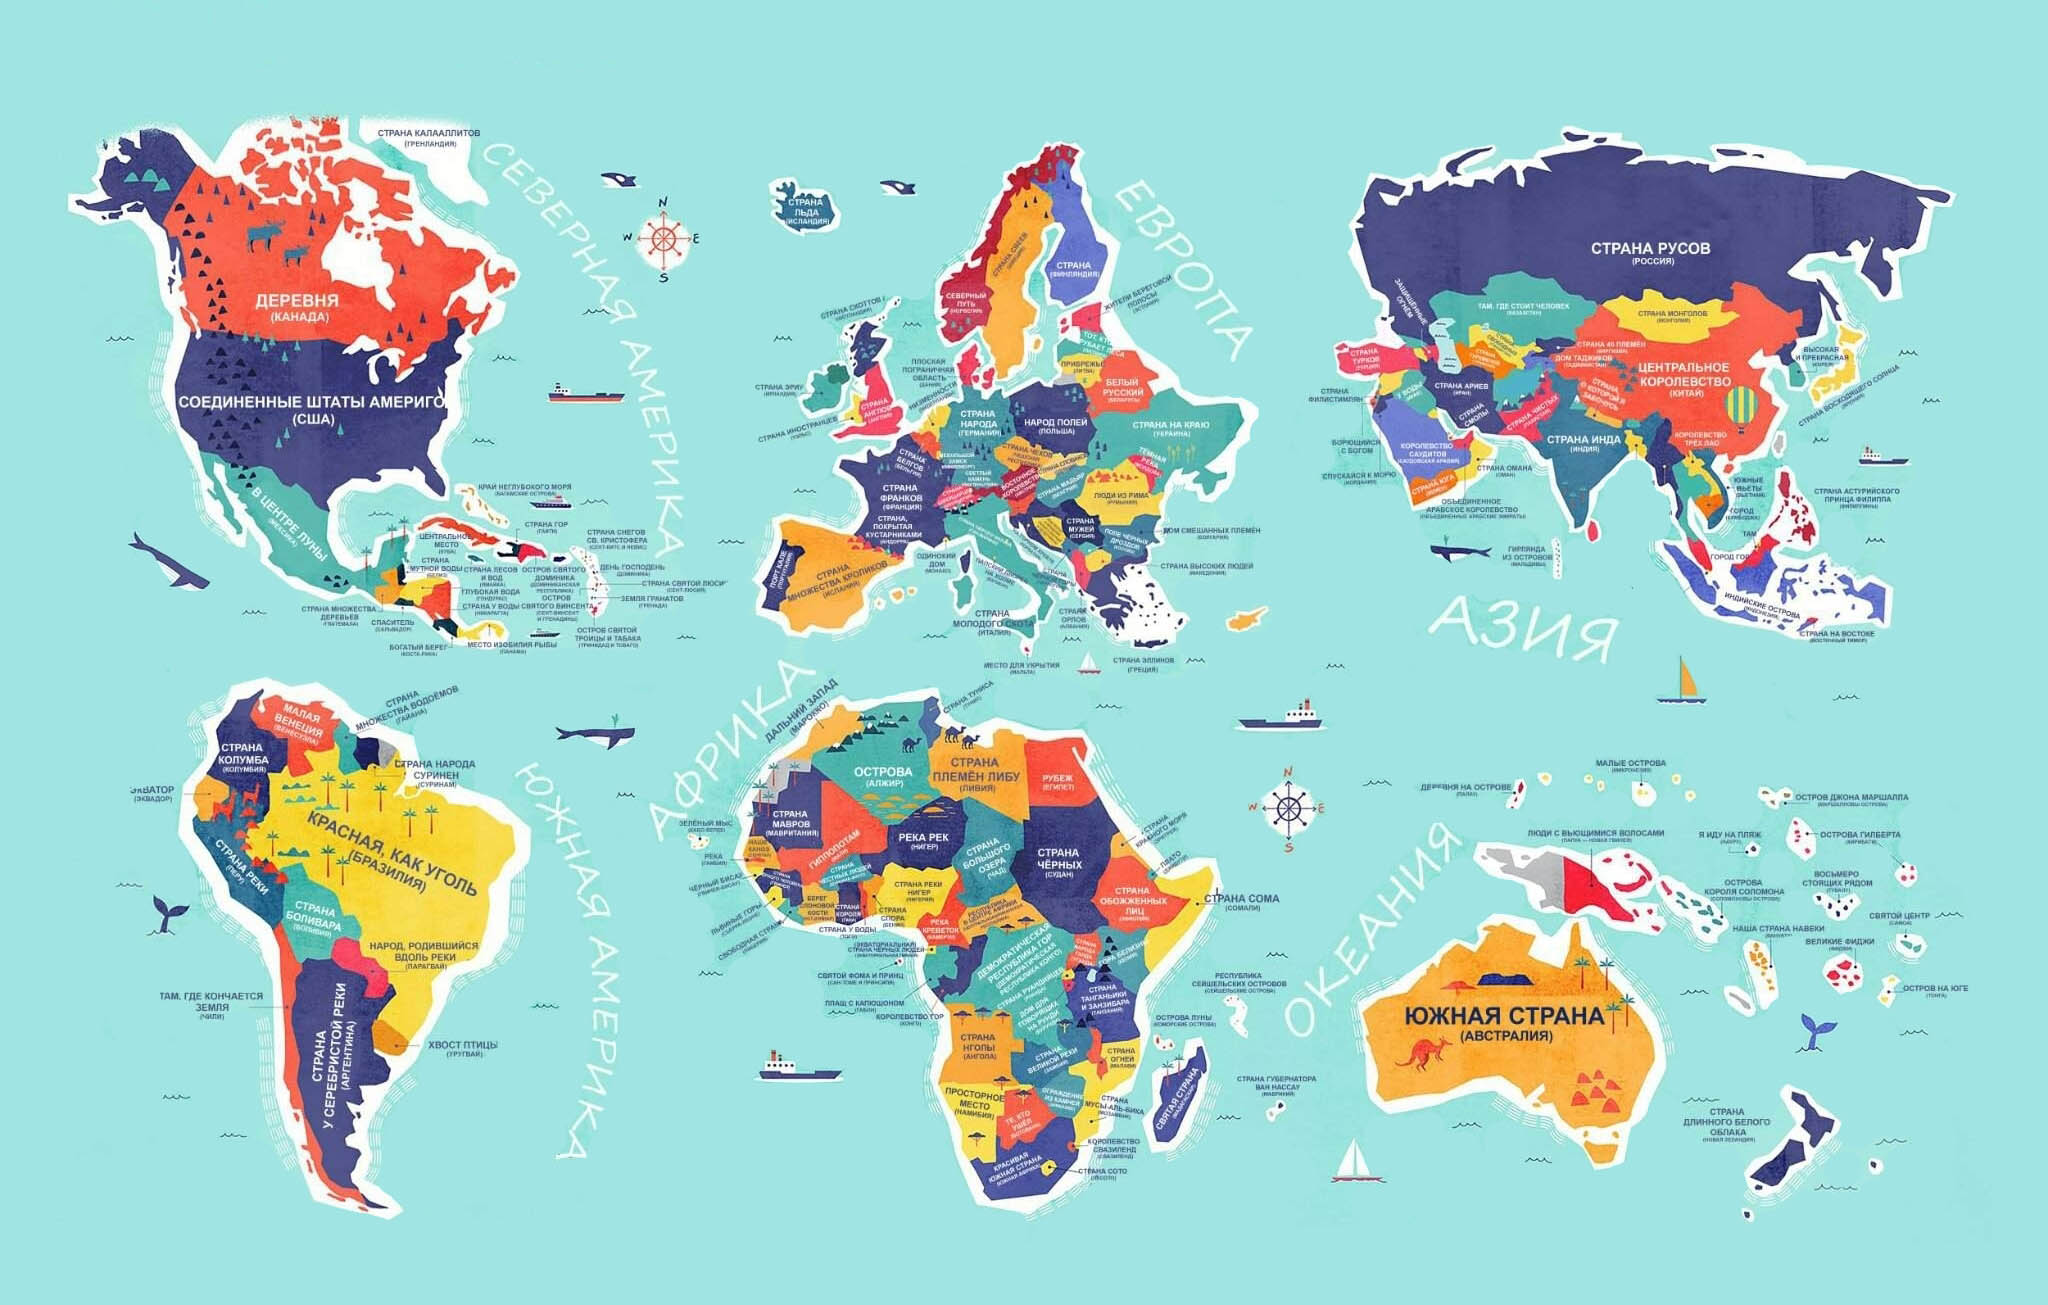 ✈ Карта мира �� буквальными названиями стран, которые станут для васнастоящим открытием